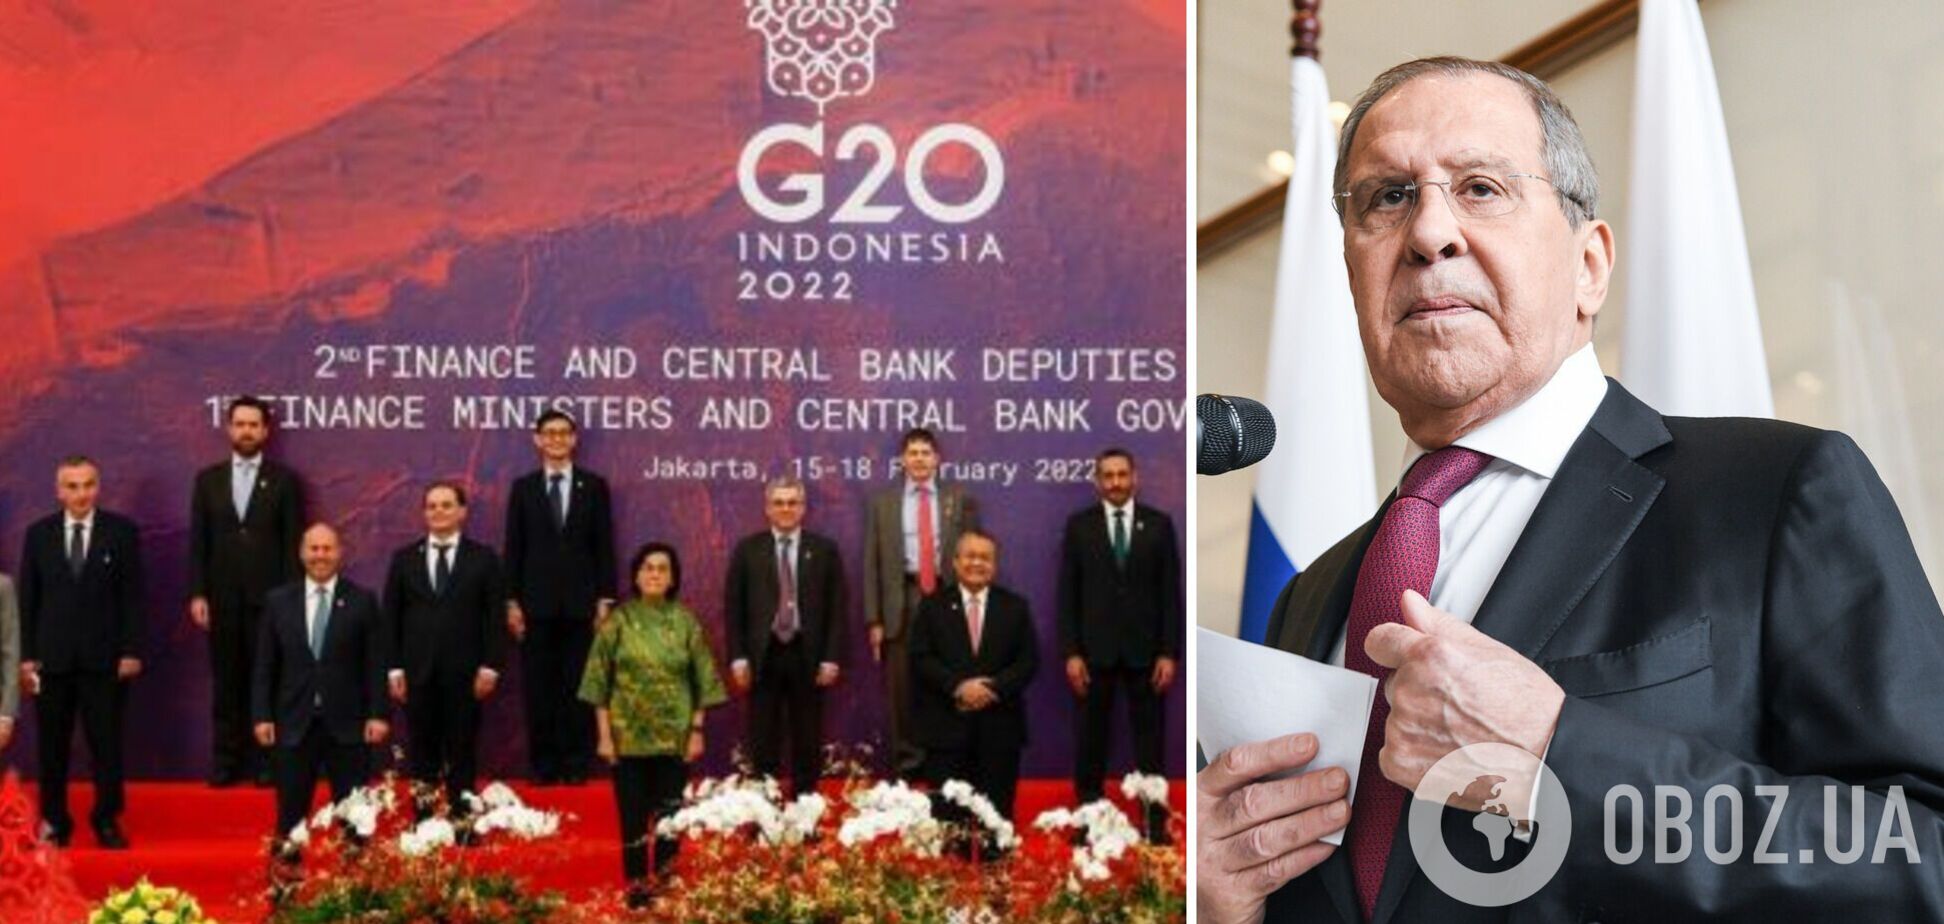 'Изгой': в сети отреагировали на вынужденное 'бегство' Лаврова со встречи министров G20 после бойкота